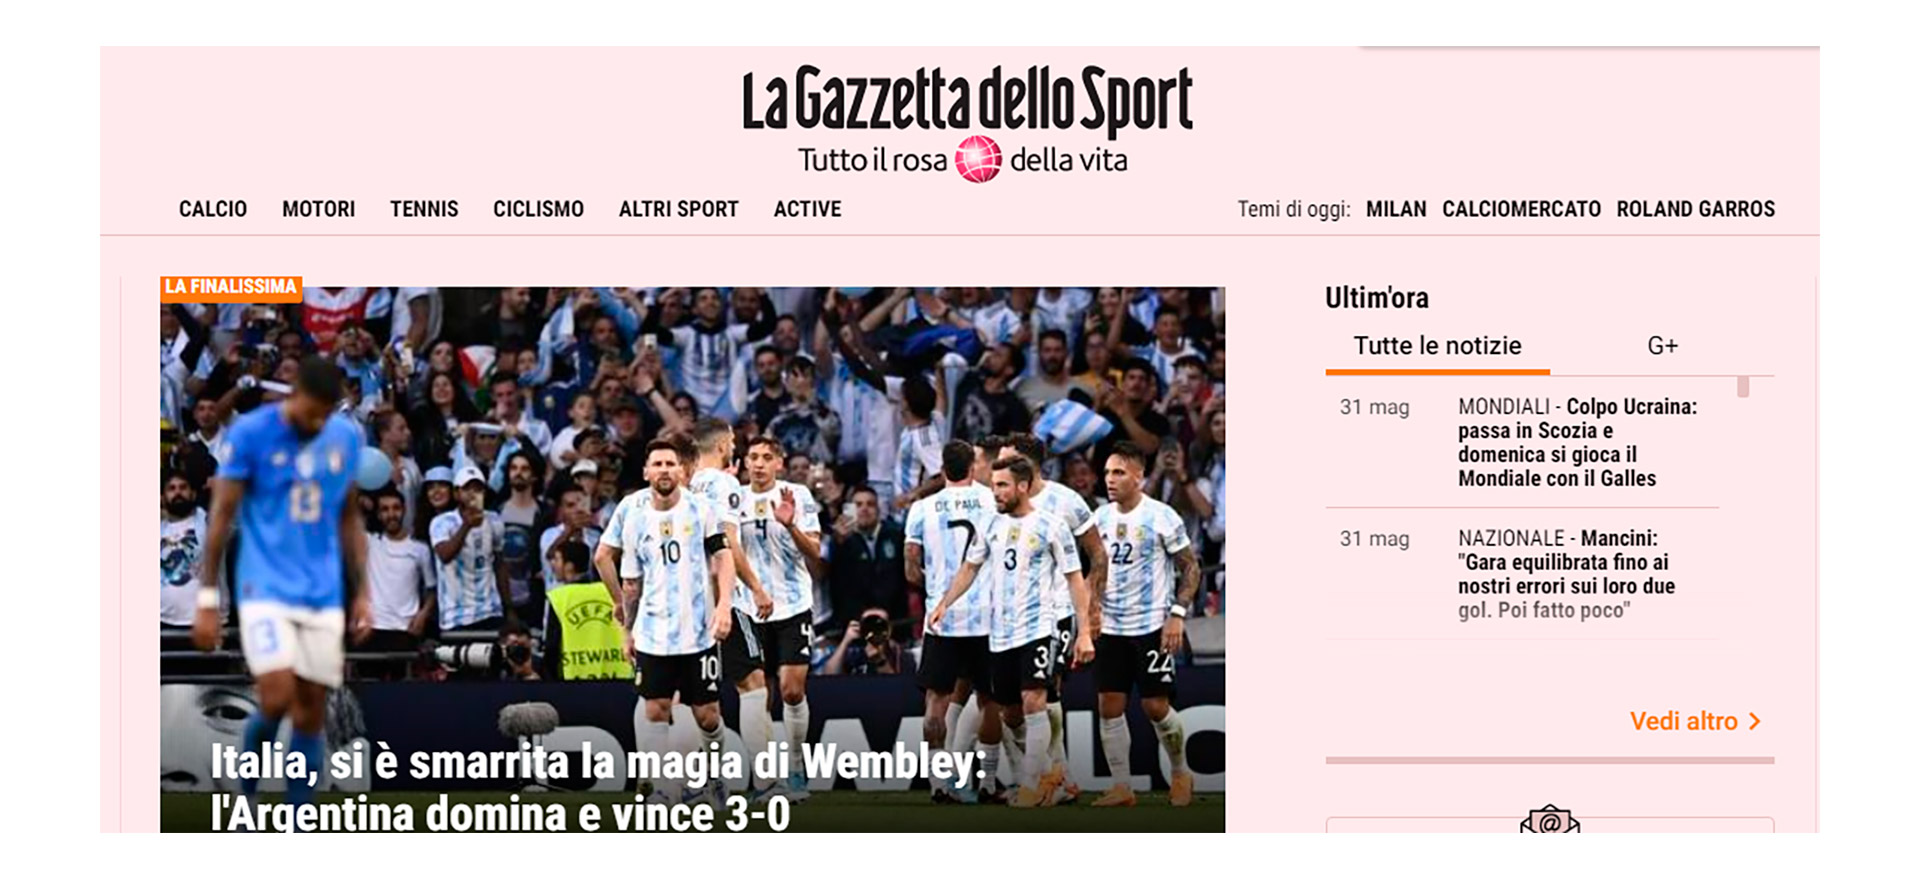 Italia, se acabó la historia: Argentina nos arrolla 3-0. Mancini, hay trabajo por hacer (La Gazzetta dello Sport)
